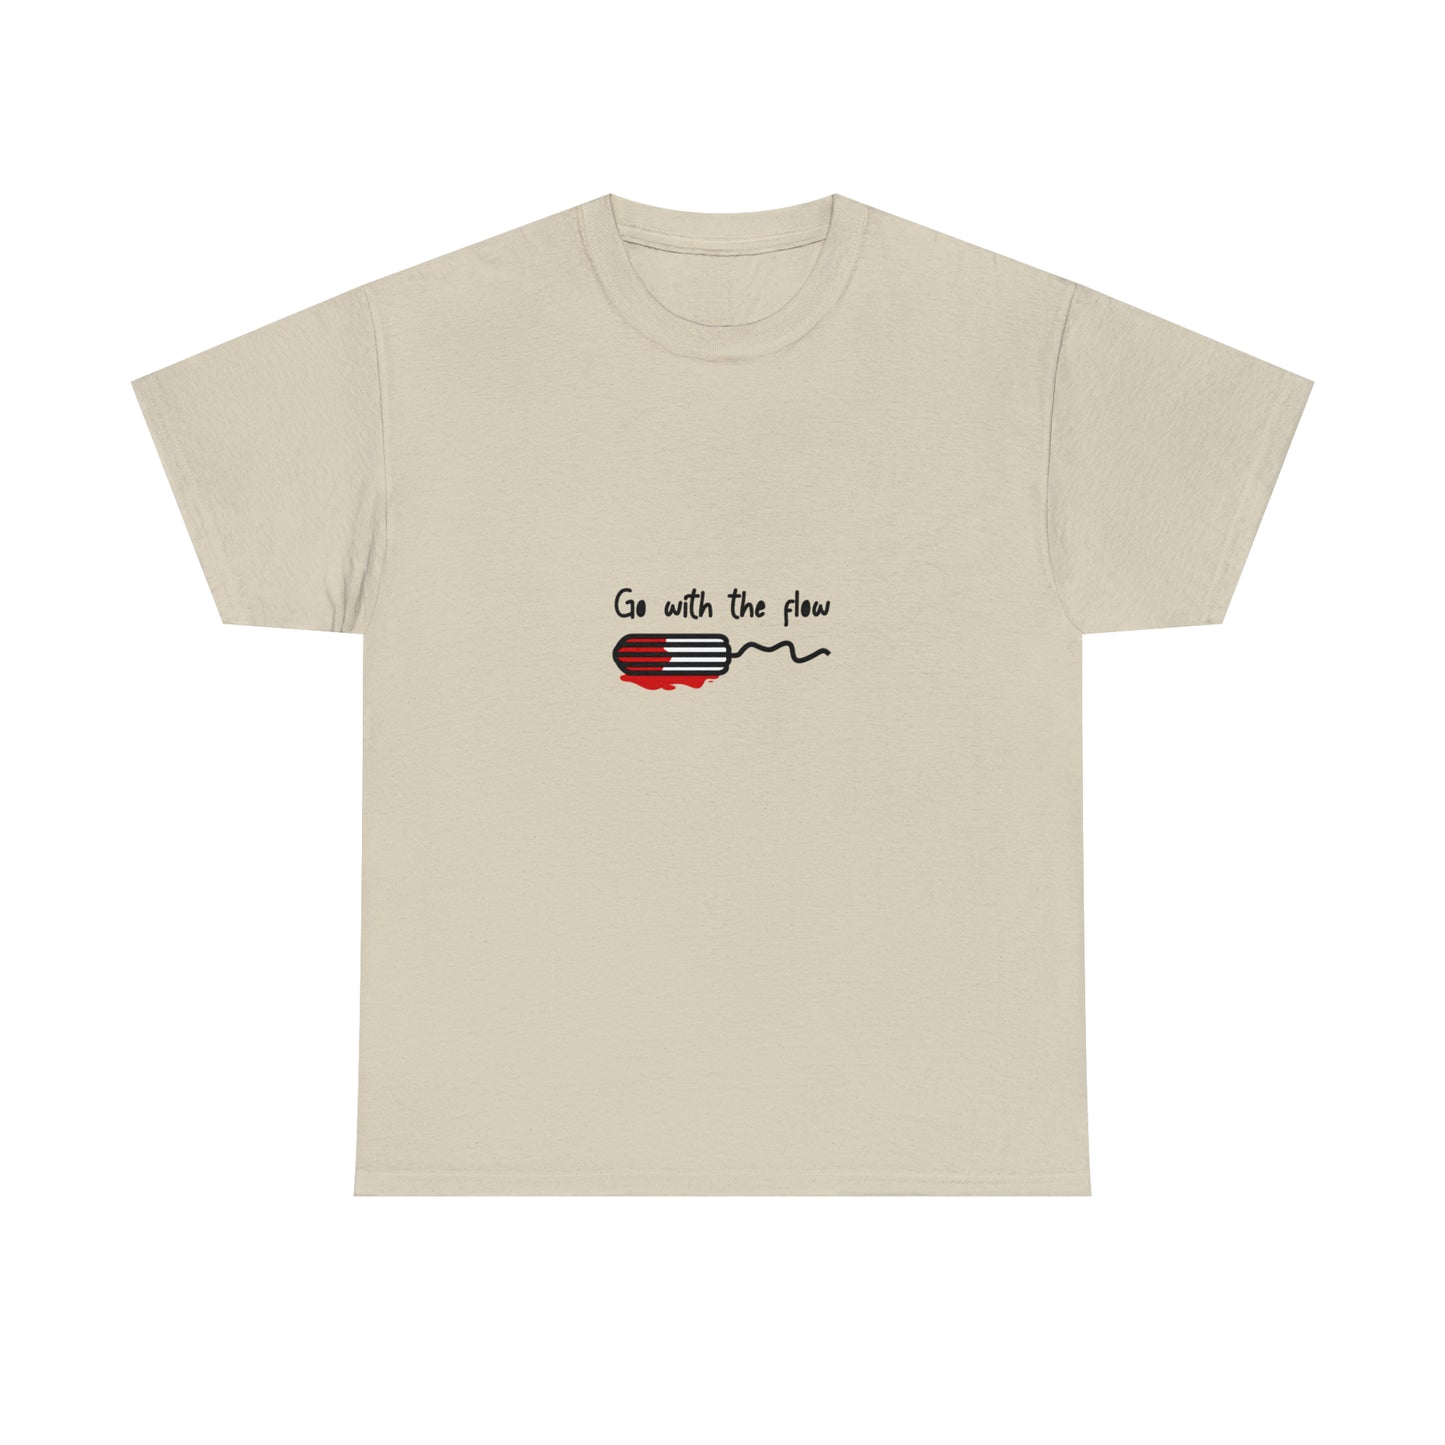 Custom Parody T-shirt, Go with the flow design